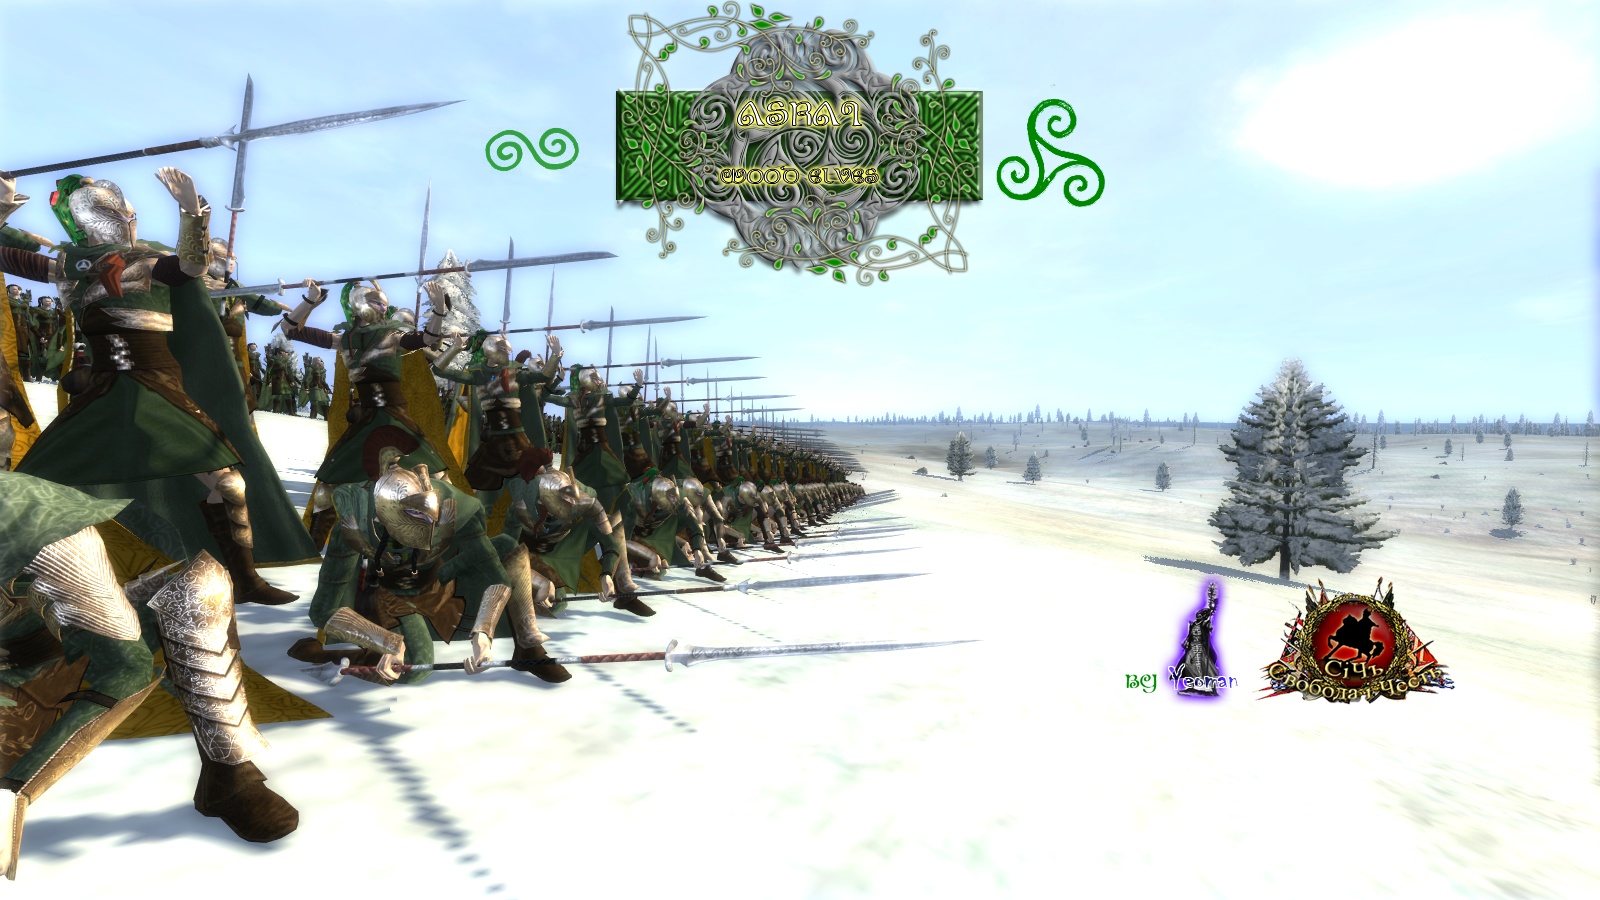 Войска лесных эльфов total War Warhammer 2